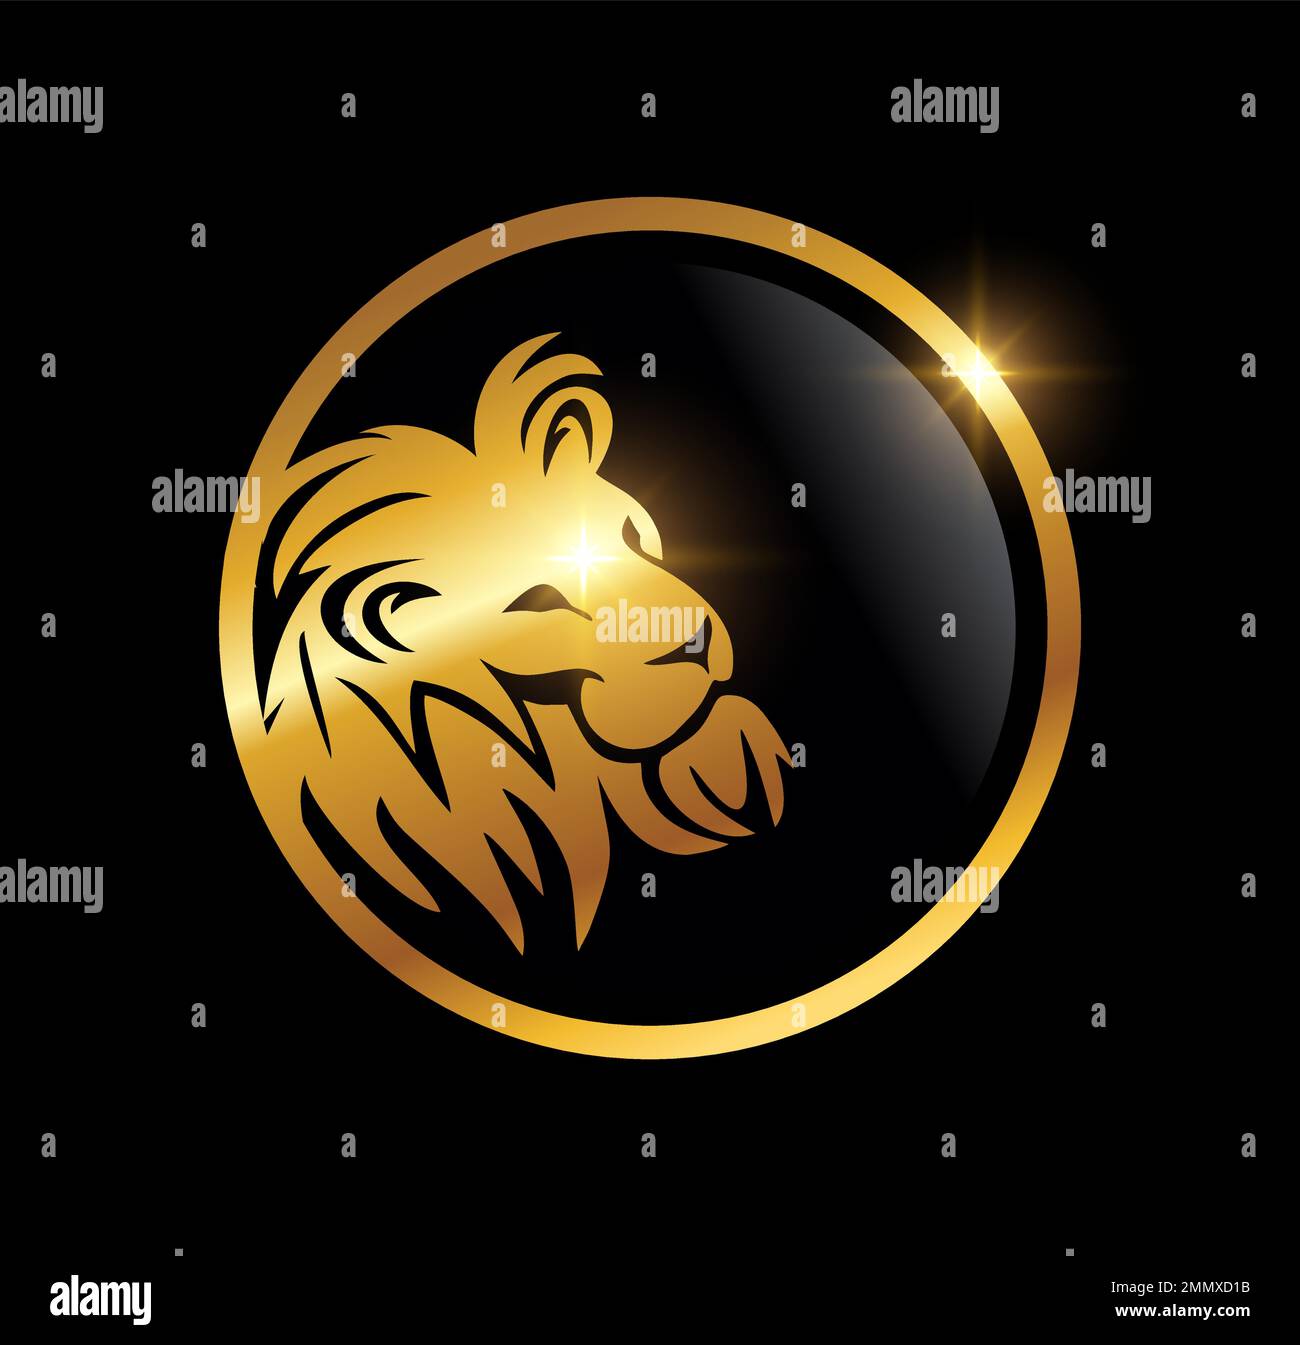 Goldener Löwenkopf im kreisförmigen Logo-Vektor auf schwarzem Hintergrund mit goldenem Glanzeffekt Stock Vektor